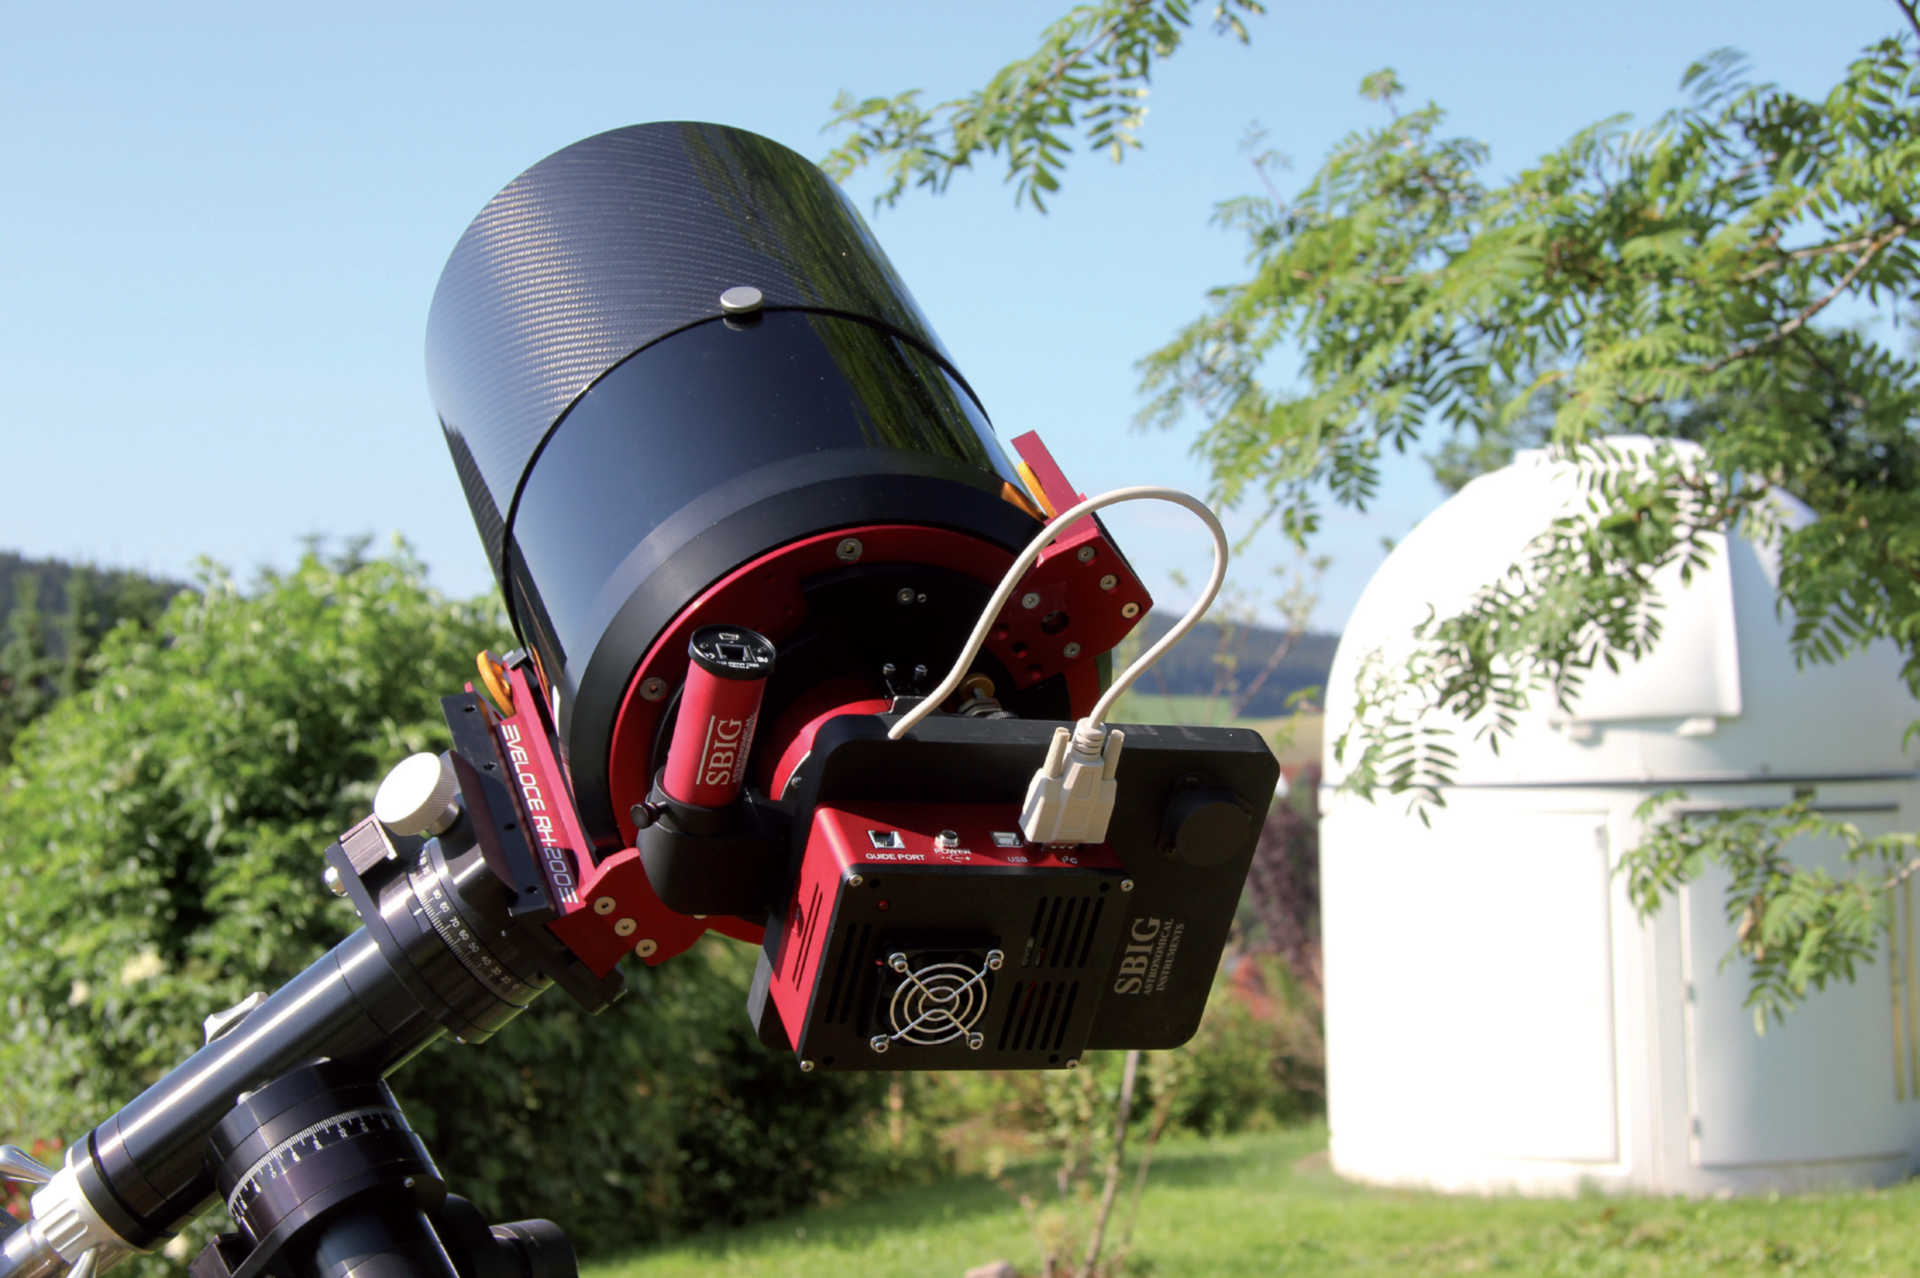 As câmaras CCD refrigeradas em telescópios Schmidt-Cassegrain com uma abertura de 200 mm são as ideais para o registo fotográfico de um exoplaneta; no entanto, o registo também pode ser feito com outros tipos de telescópios — há registos bem-sucedidos de exoplanetas com refratores de 60 mm. U. Dittler